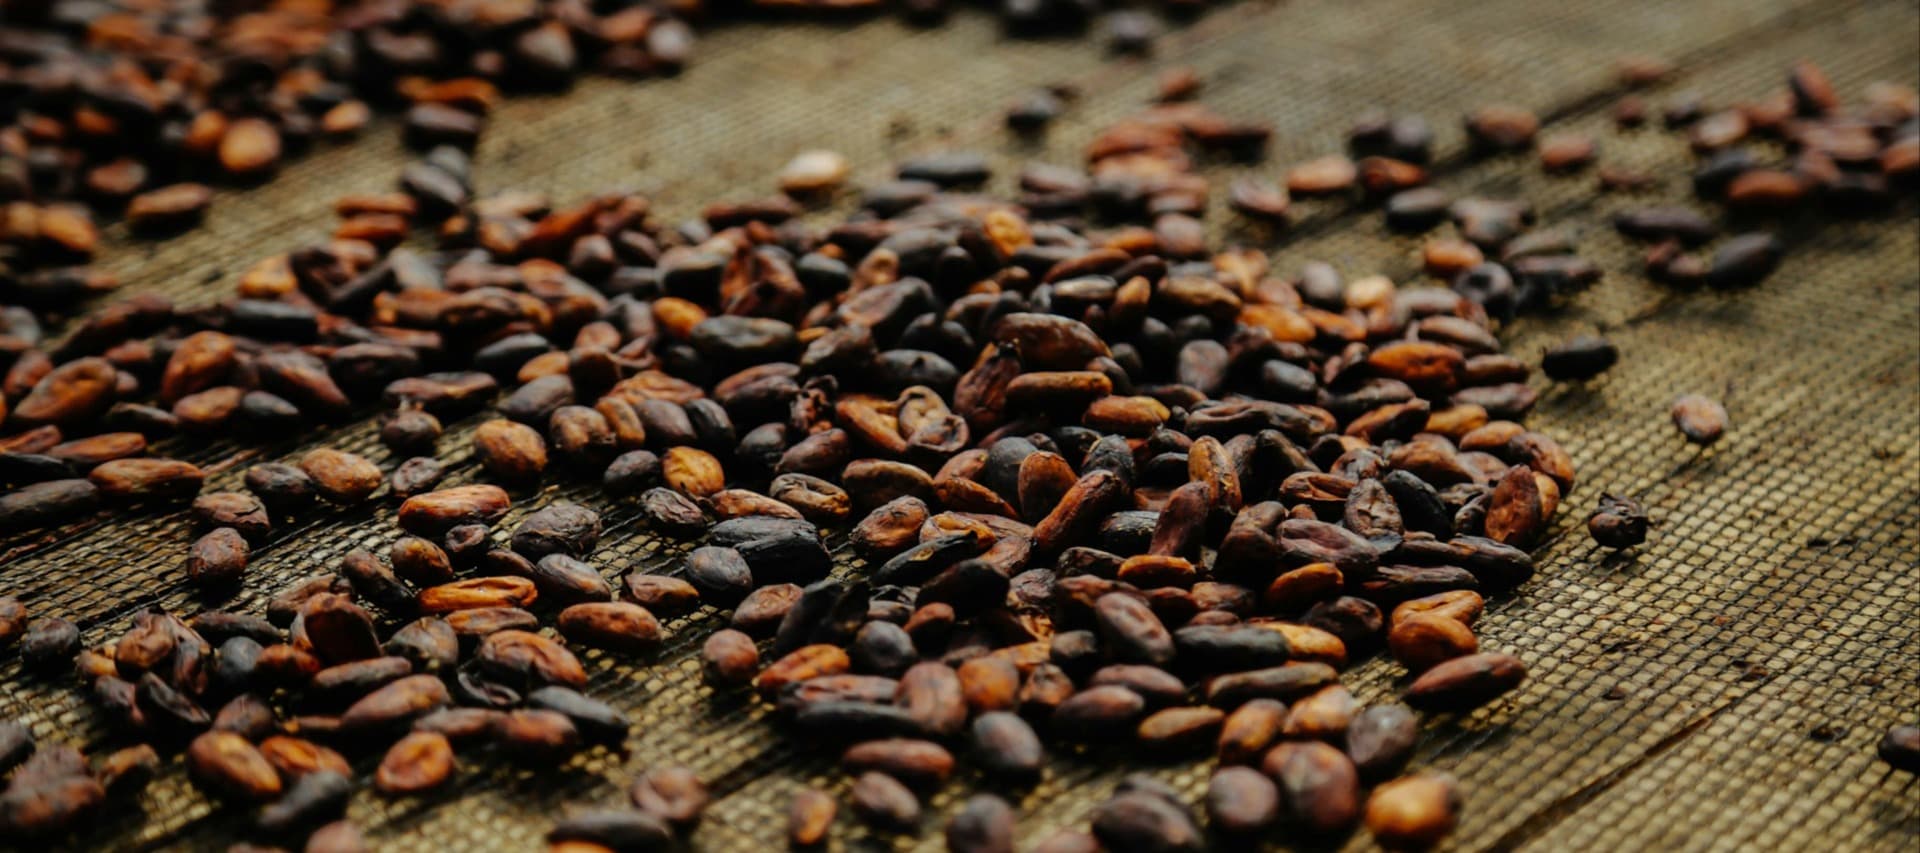 Фото новости: "Переработчики какао-бобов бьют тревогу из-за роста цен"